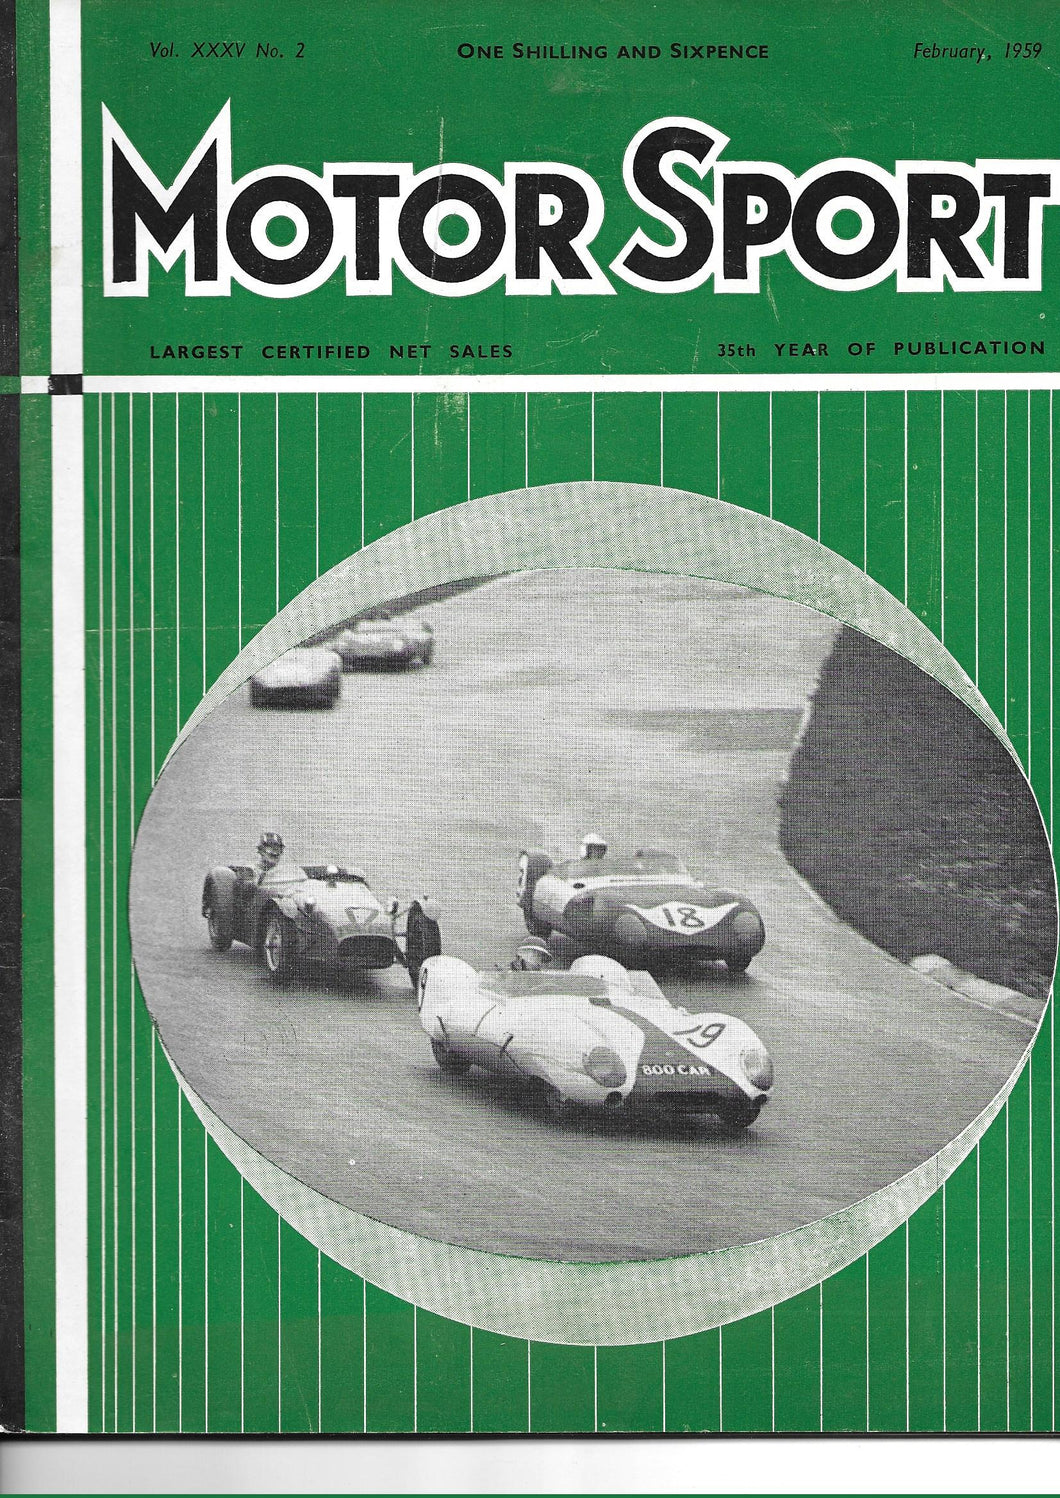 Motor Sport, Magazine XXXV No.2 February 1959